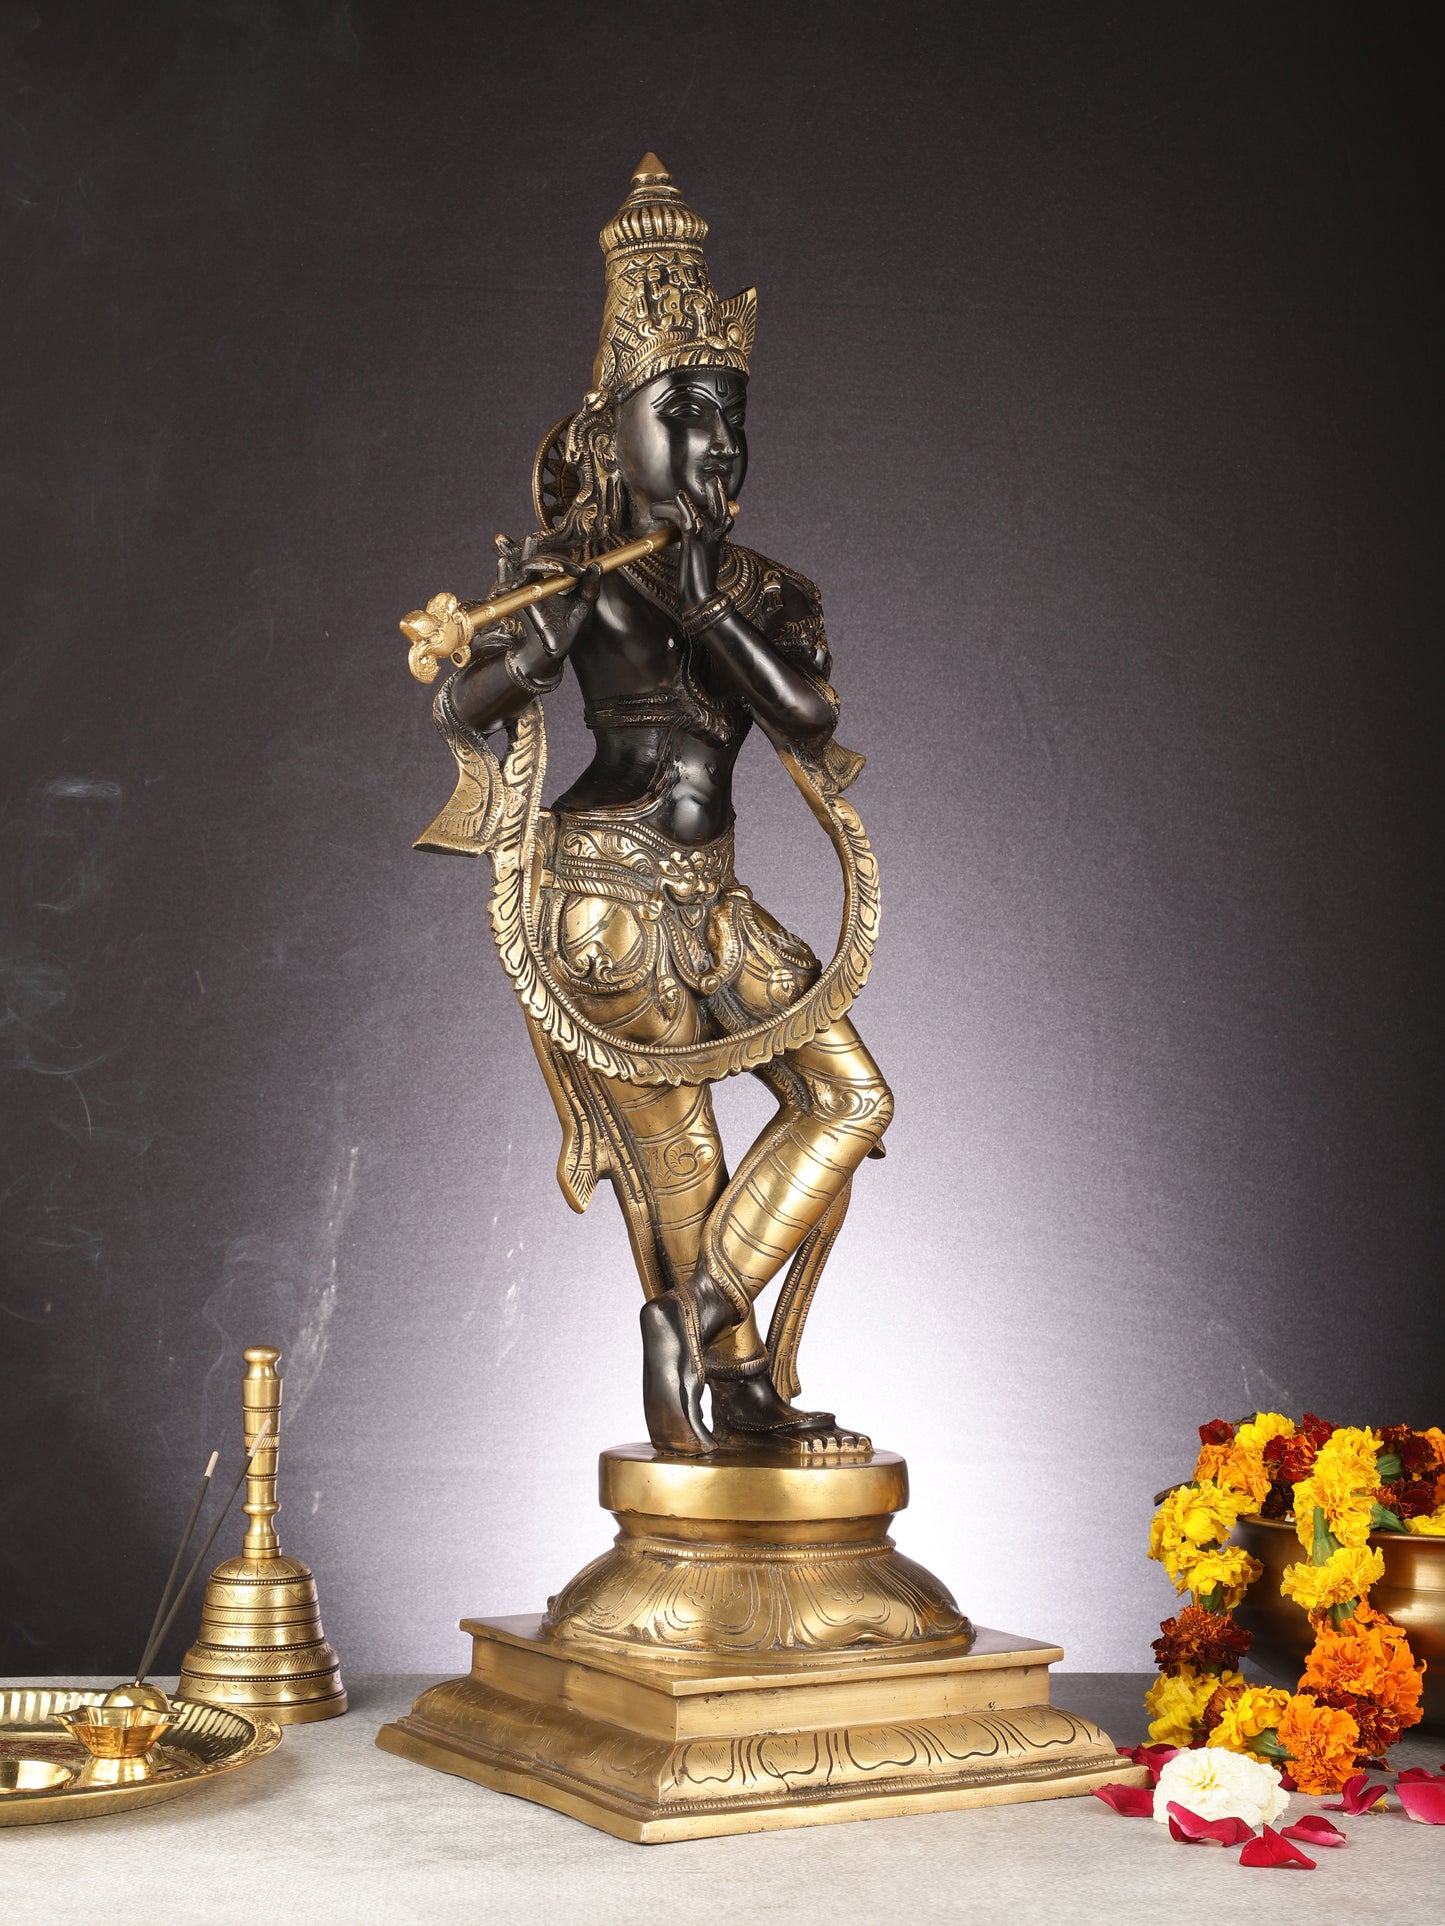 Brass Superfine Lord Krishna Statue - 28"